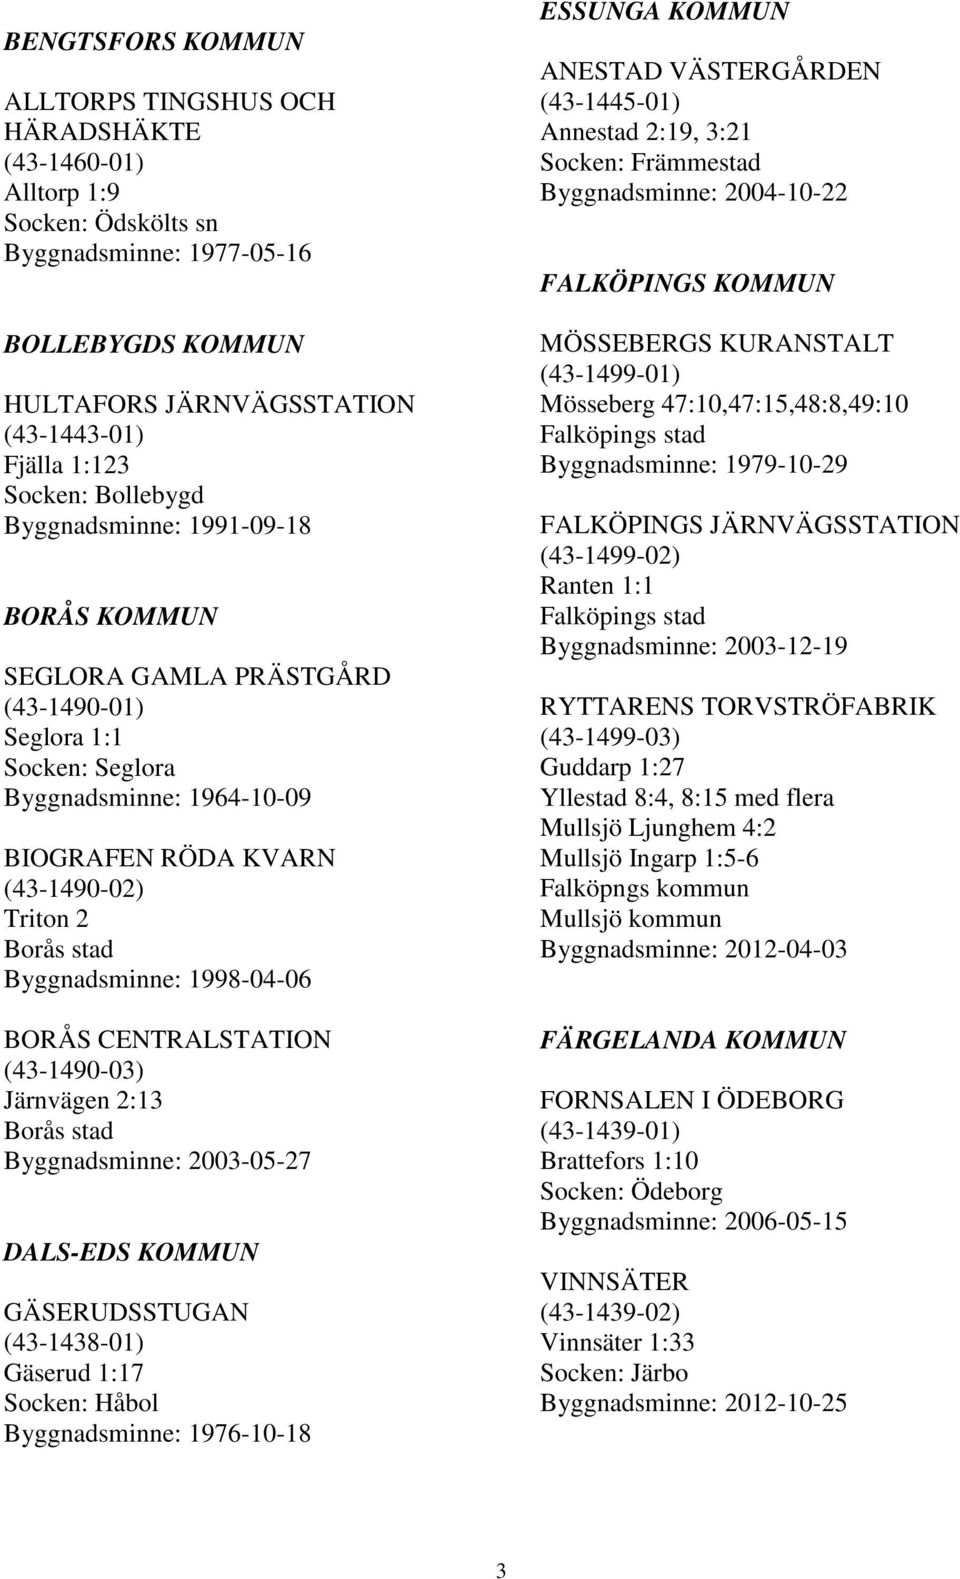 stad Byggnadsminne: 1998-04-06 BORÅS CENTRALSTATION (43-1490-03) Järnvägen 2:13 Borås stad Byggnadsminne: 2003-05-27 DALS-EDS KOMMUN GÄSERUDSSTUGAN (43-1438-01) Gäserud 1:17 Socken: Håbol